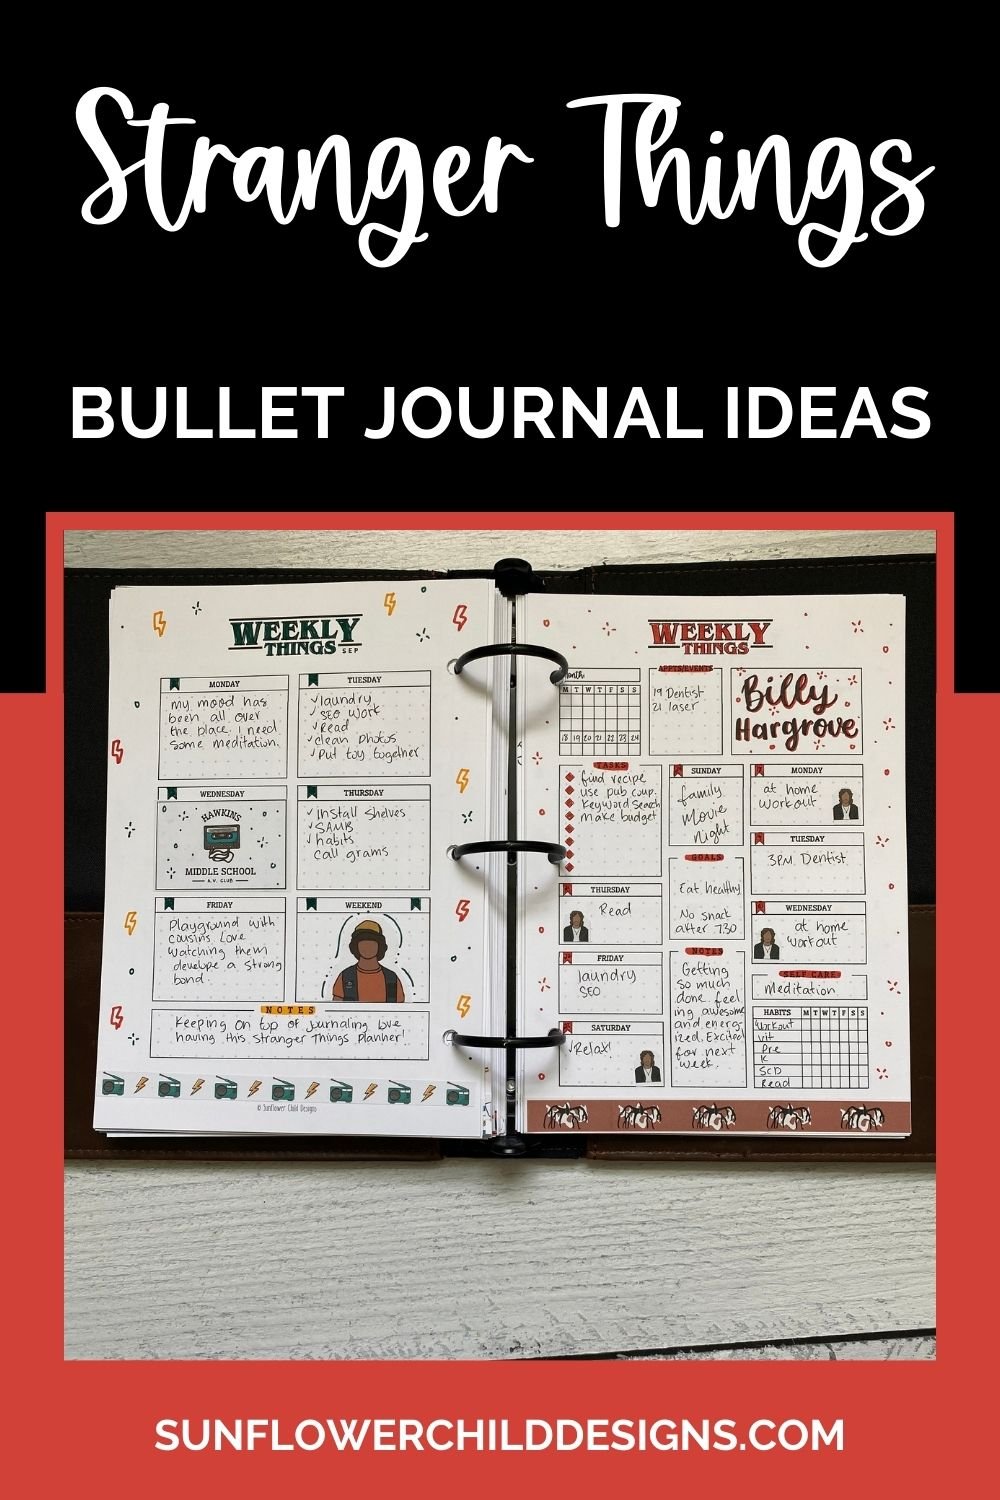 stranger-things-bullet-journal-ideas-7.jpg